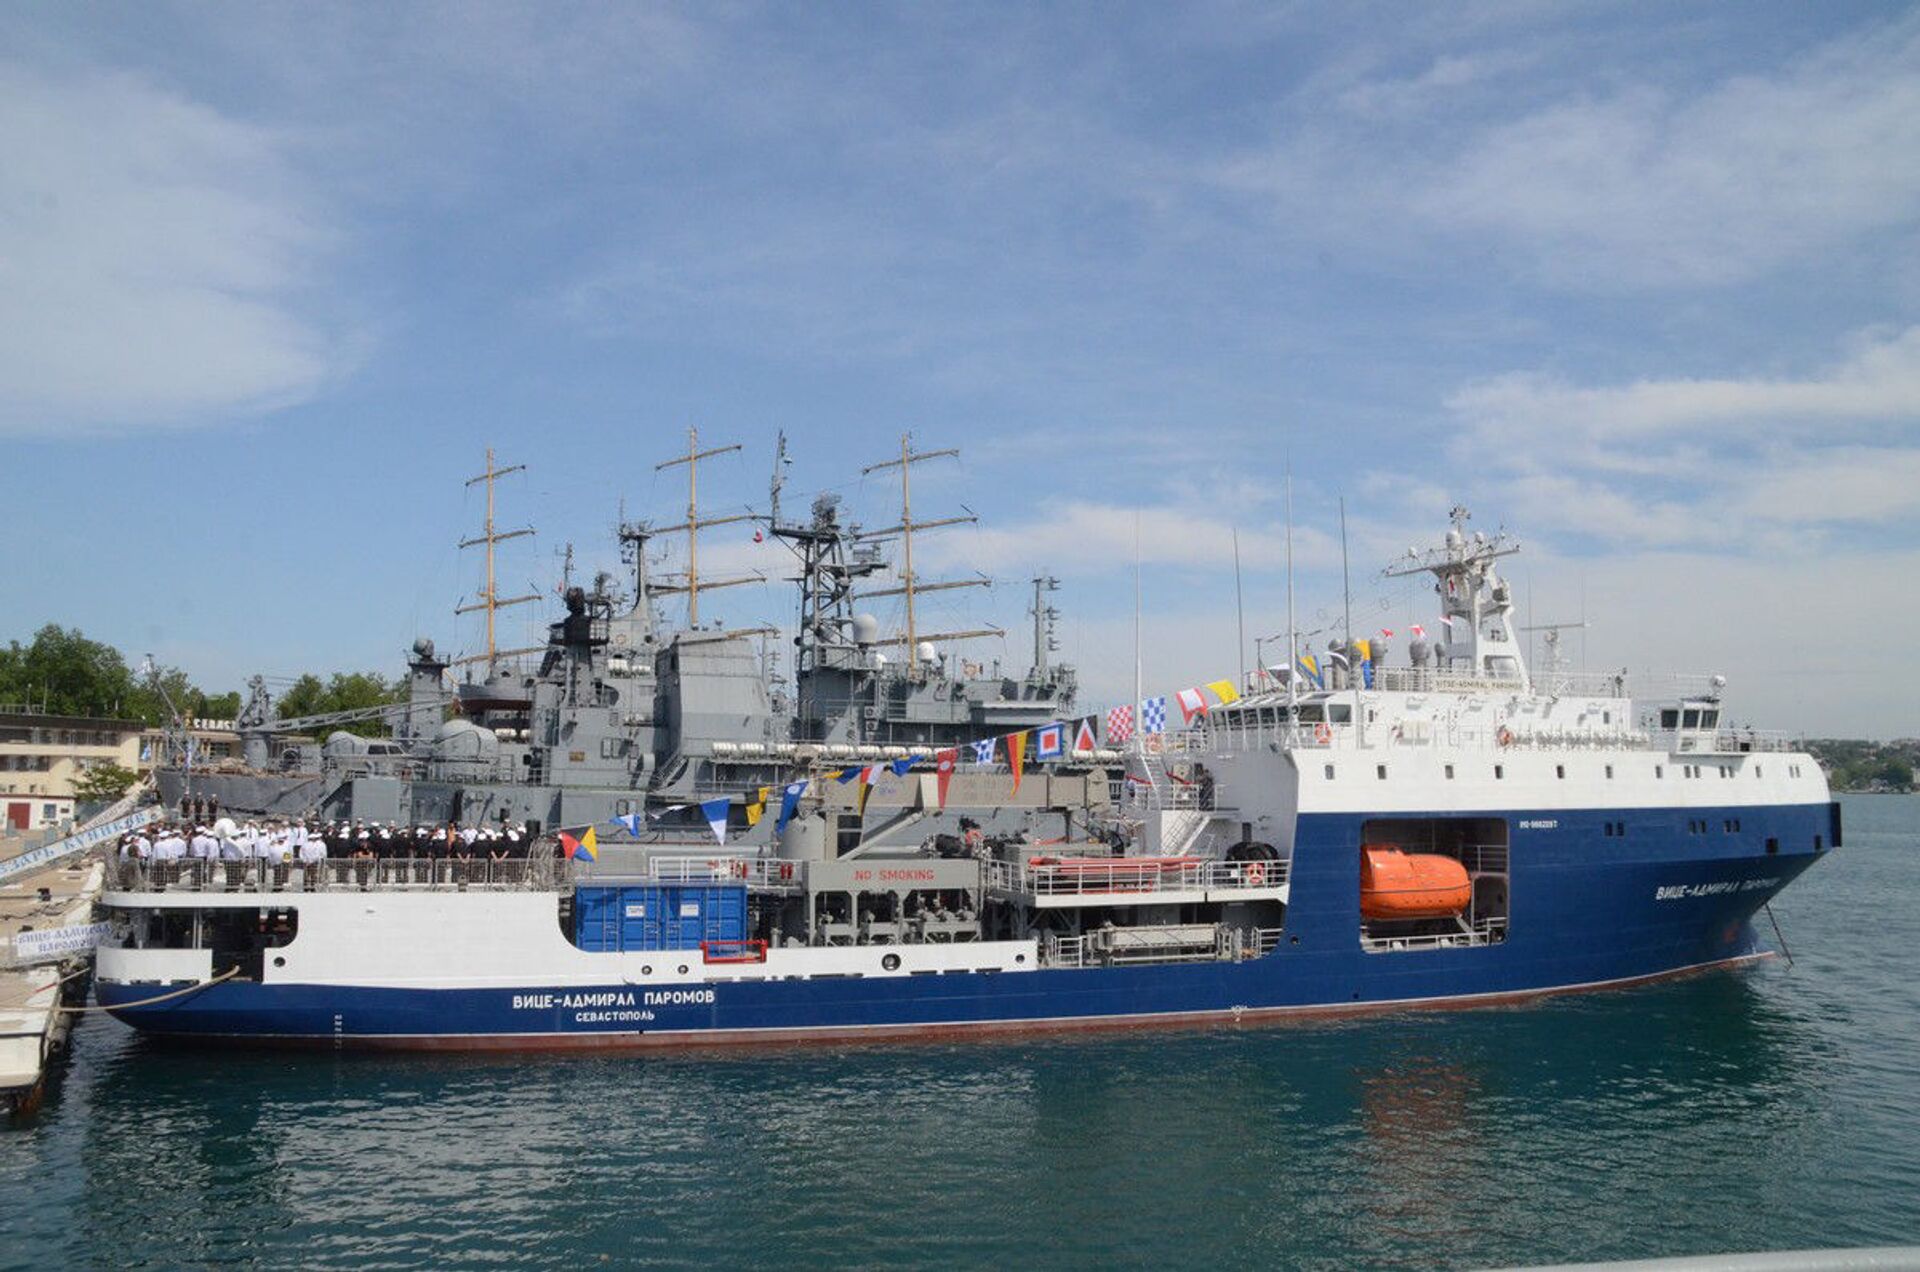 Tàu chở dầu Phó đô đốc Paromov được biên chế vào Hạm đội Biển Đen của Nga - Sputnik Việt Nam, 1920, 29.05.2021